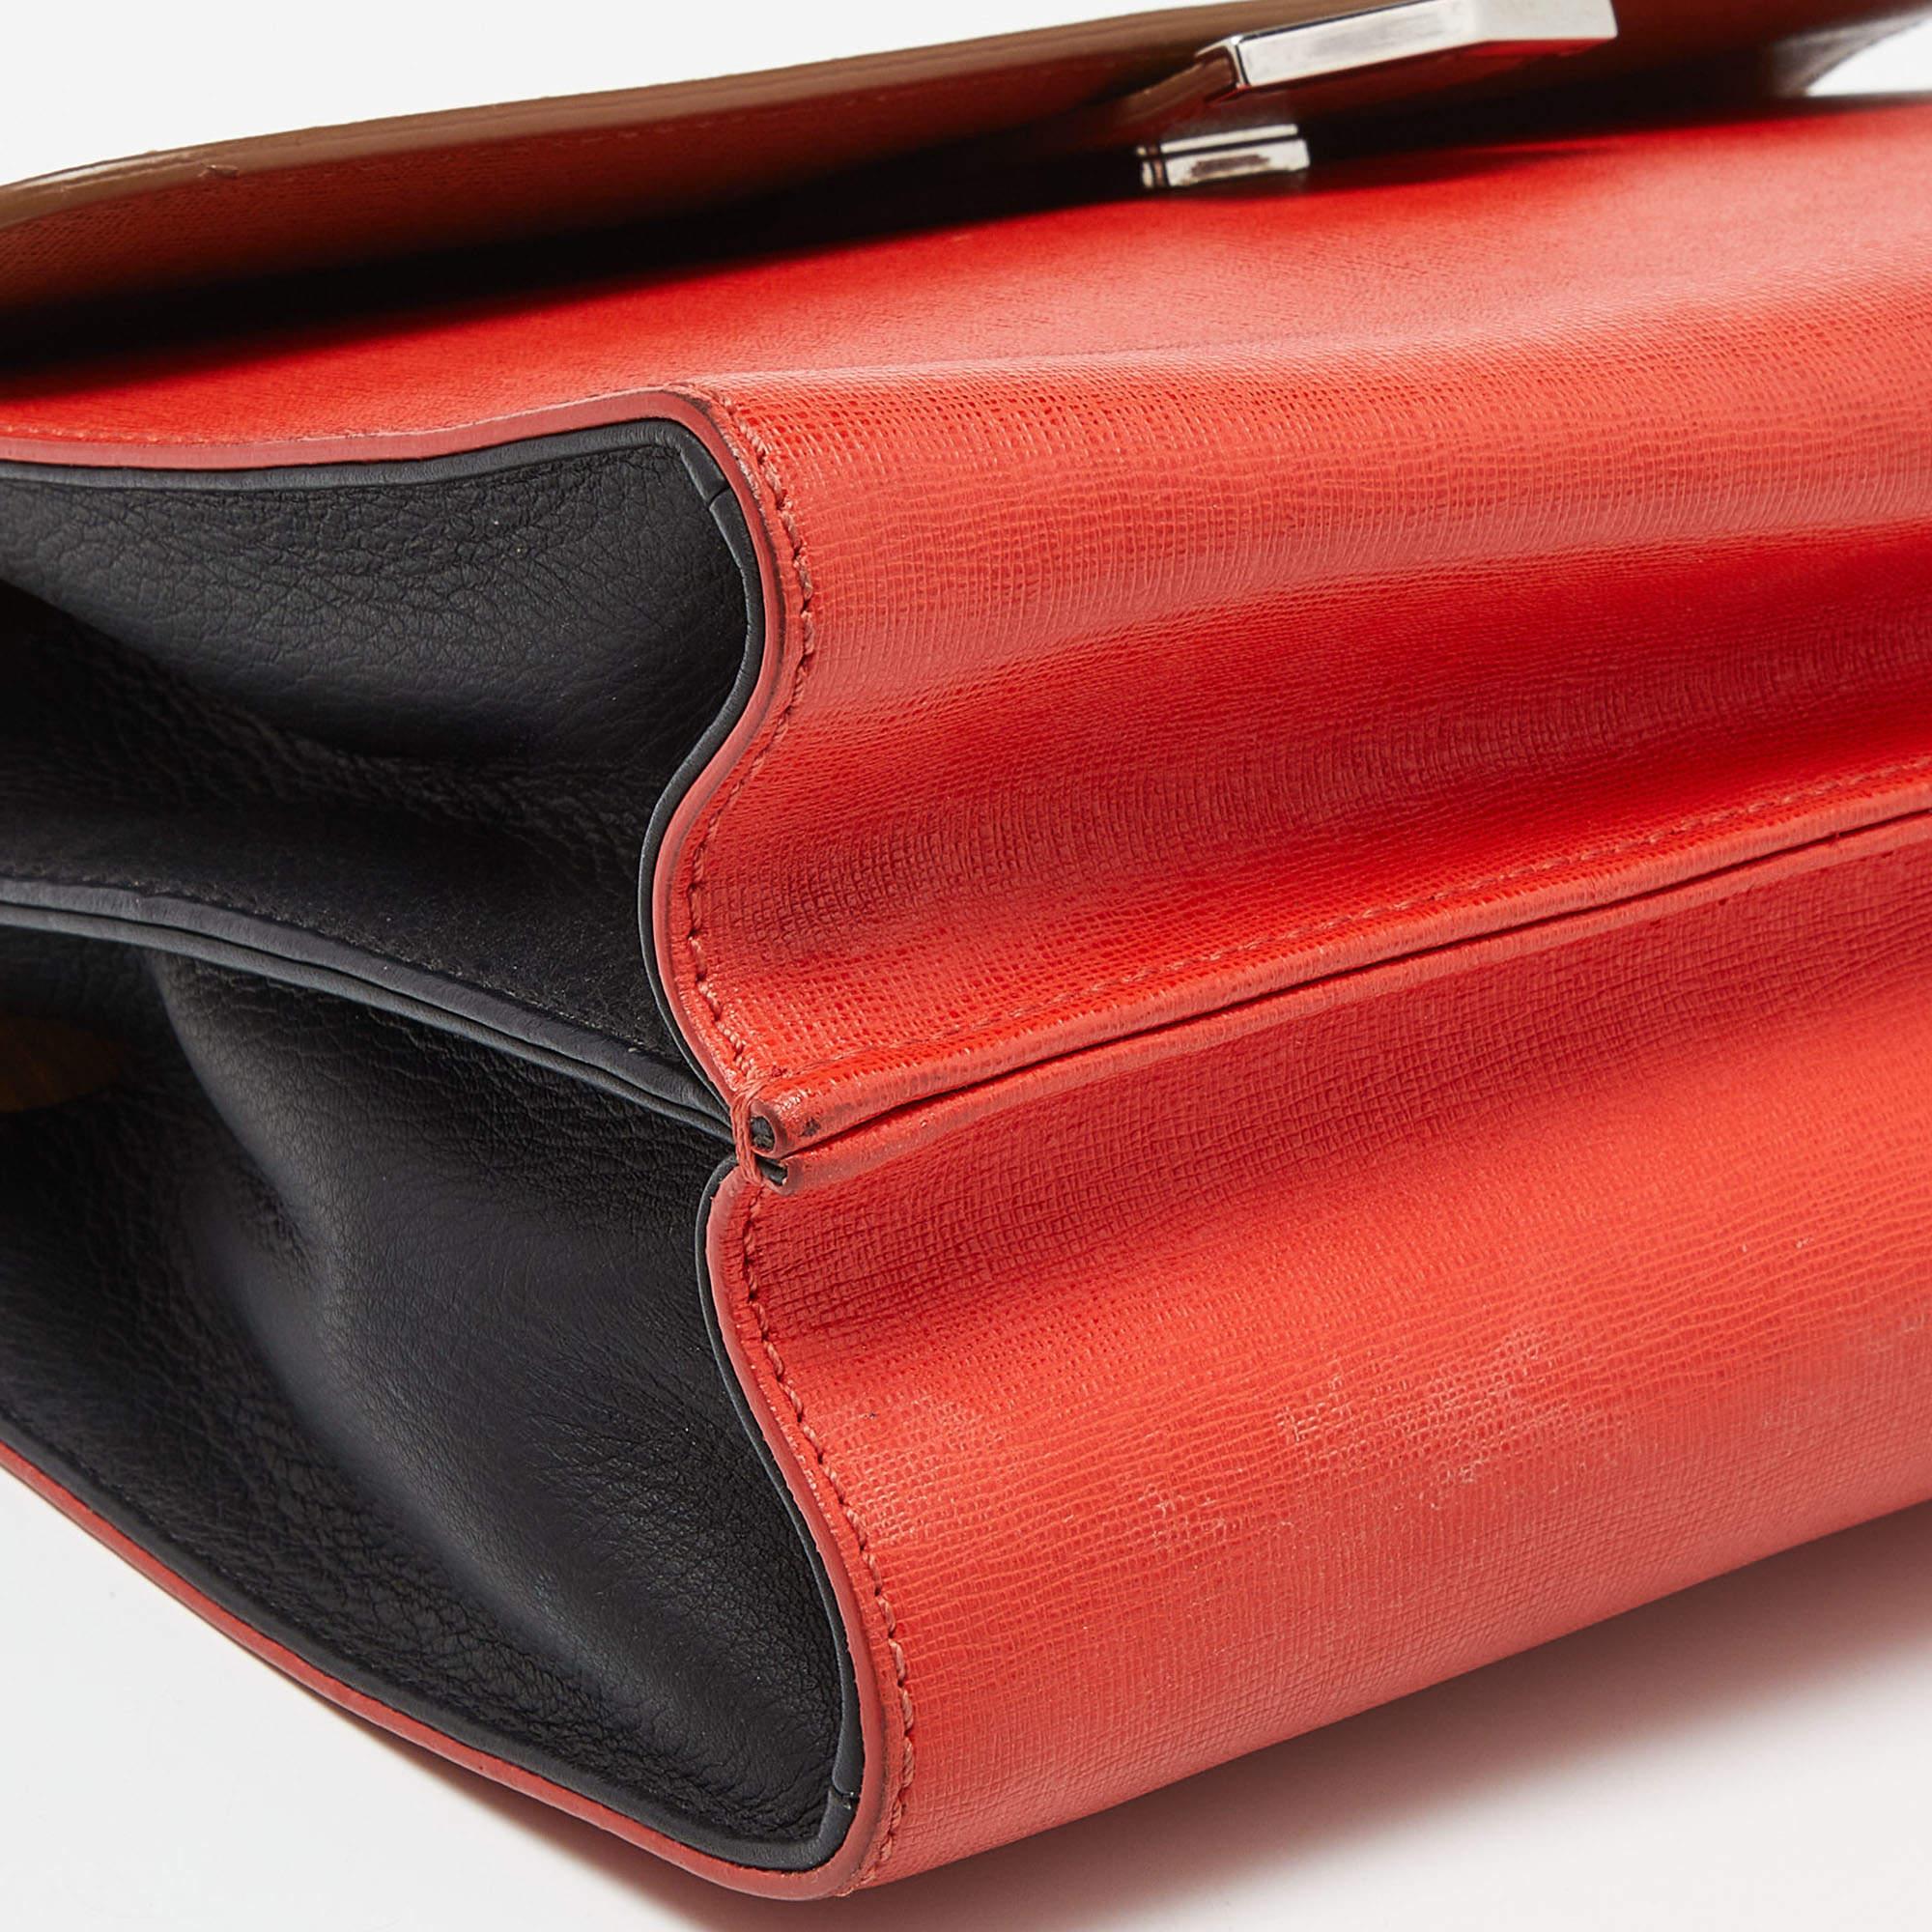 Fendi Tri Color Leather Small Demi Jour Top Handle Bag In Fair Condition For Sale In Dubai, Al Qouz 2